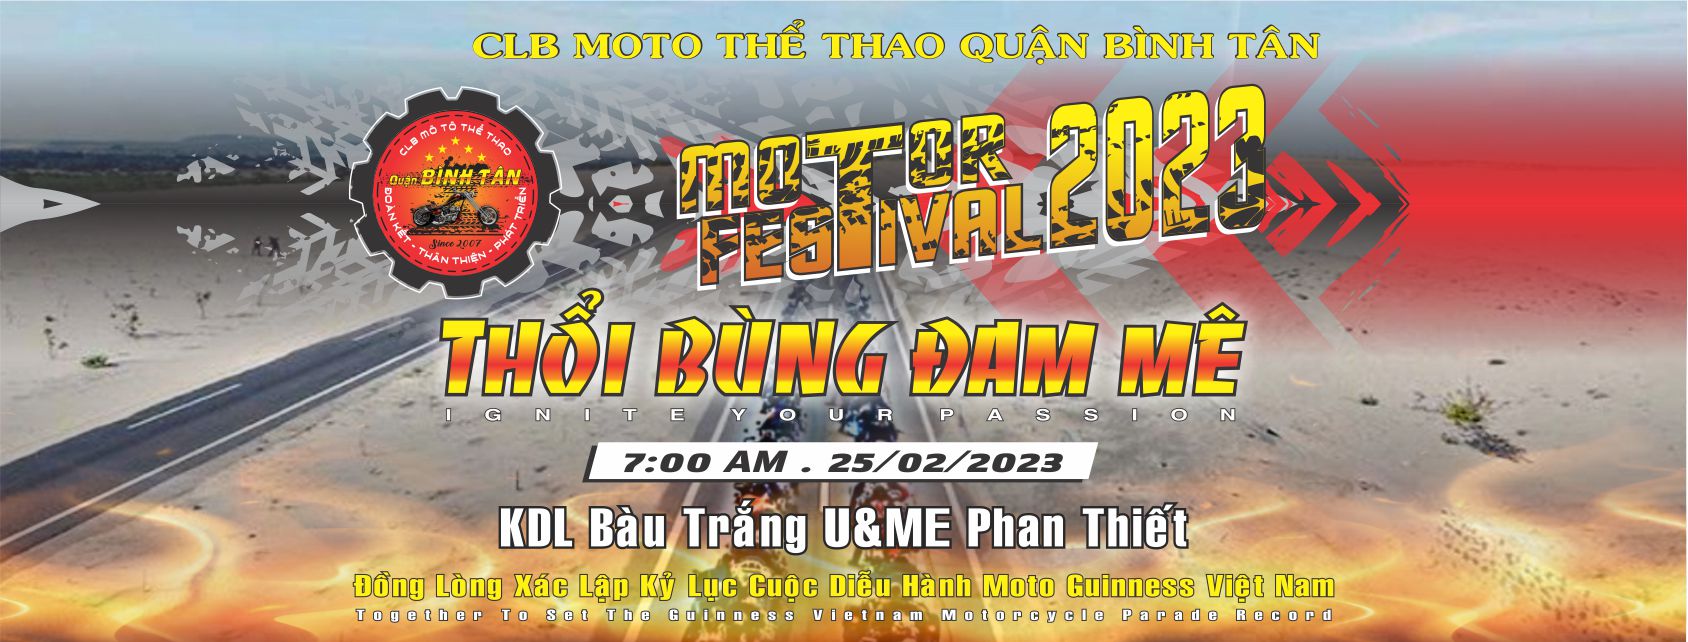 Lễ Hội Mô Tô Việt Nam 2023 xác lập Guinness sắp diễn ra tại KDL Bàu Trắng U&Me